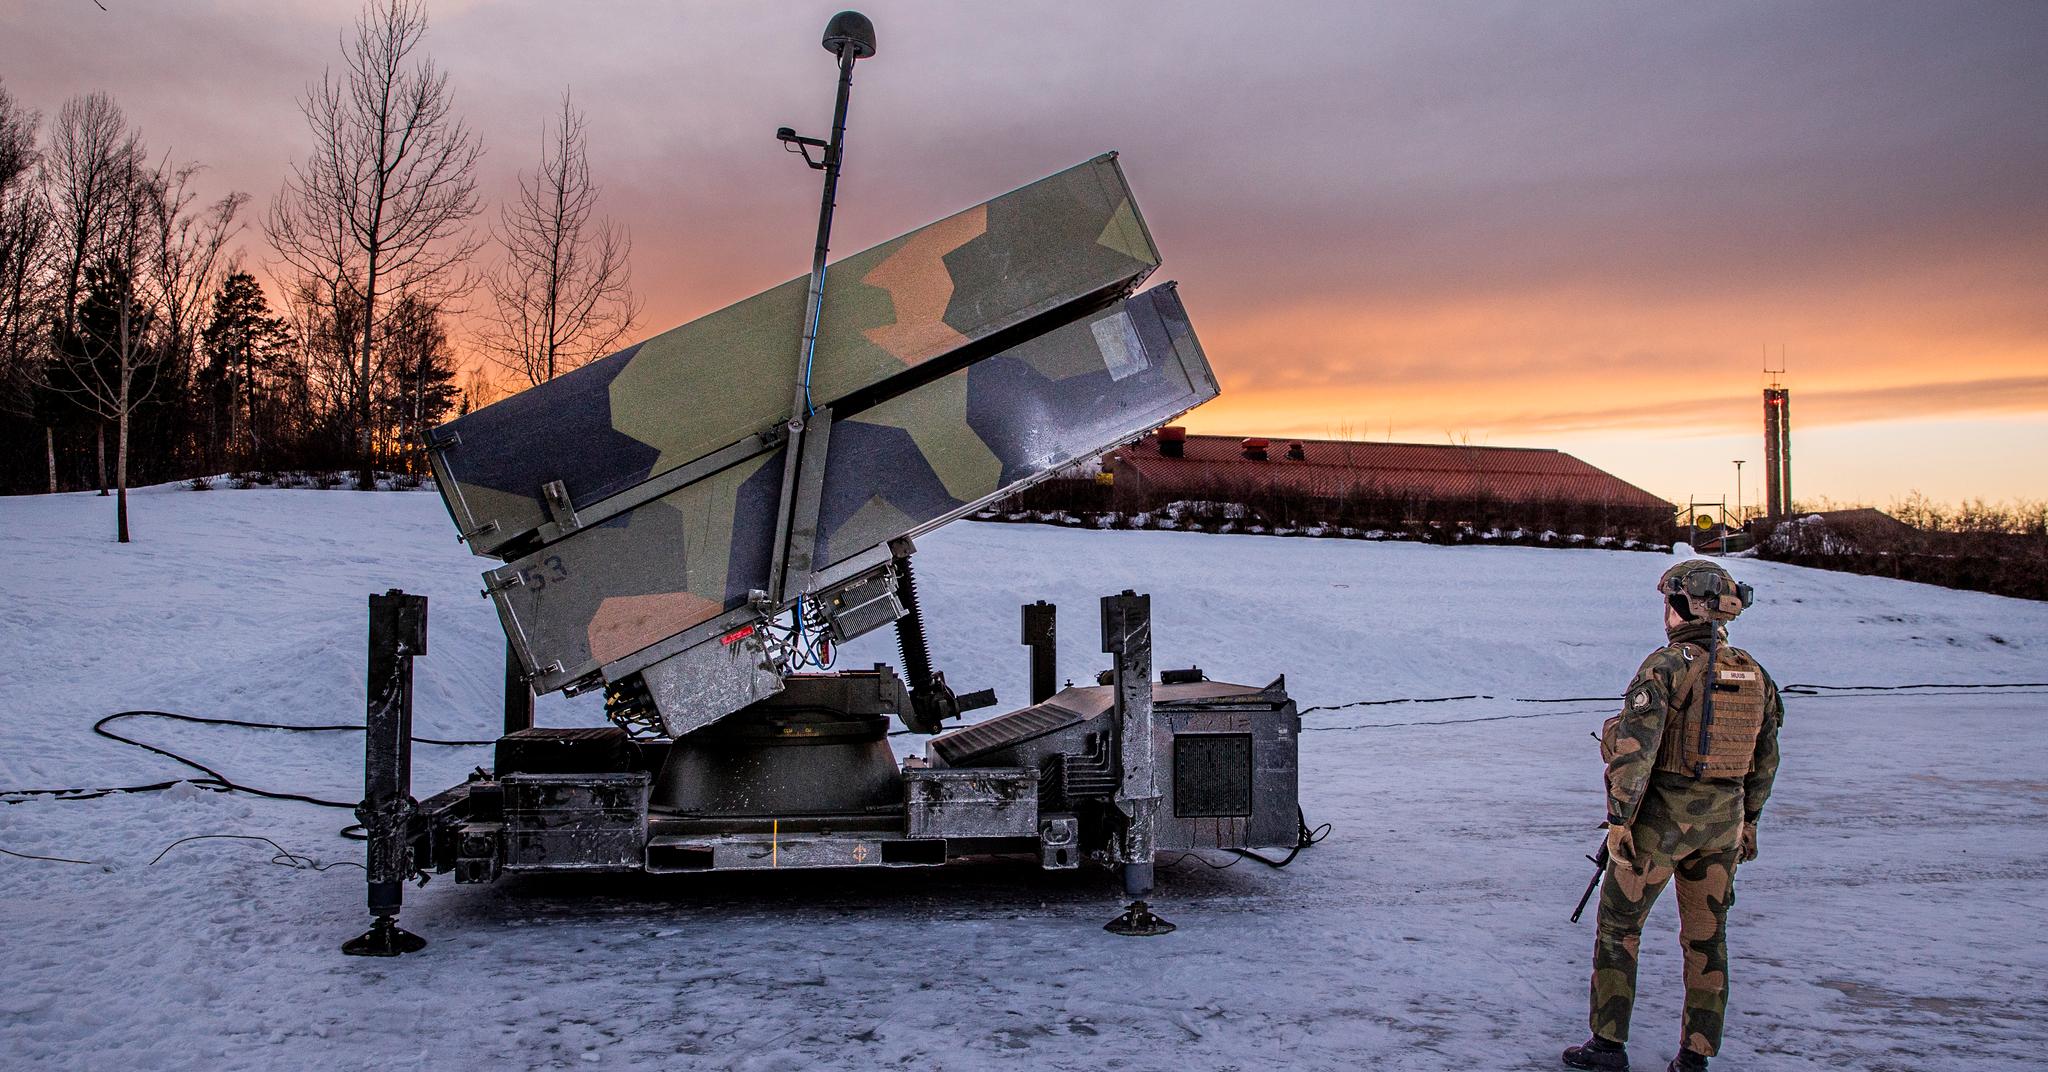 Nasams står for Norwegian Advanced Surface to Air Missile System og er utviklet av Kongsberg Gruppen. Her ble en enhet utplassert på Huseby i Oslo i forbindelse med øvelsen Joint Viking 7. mars i år.